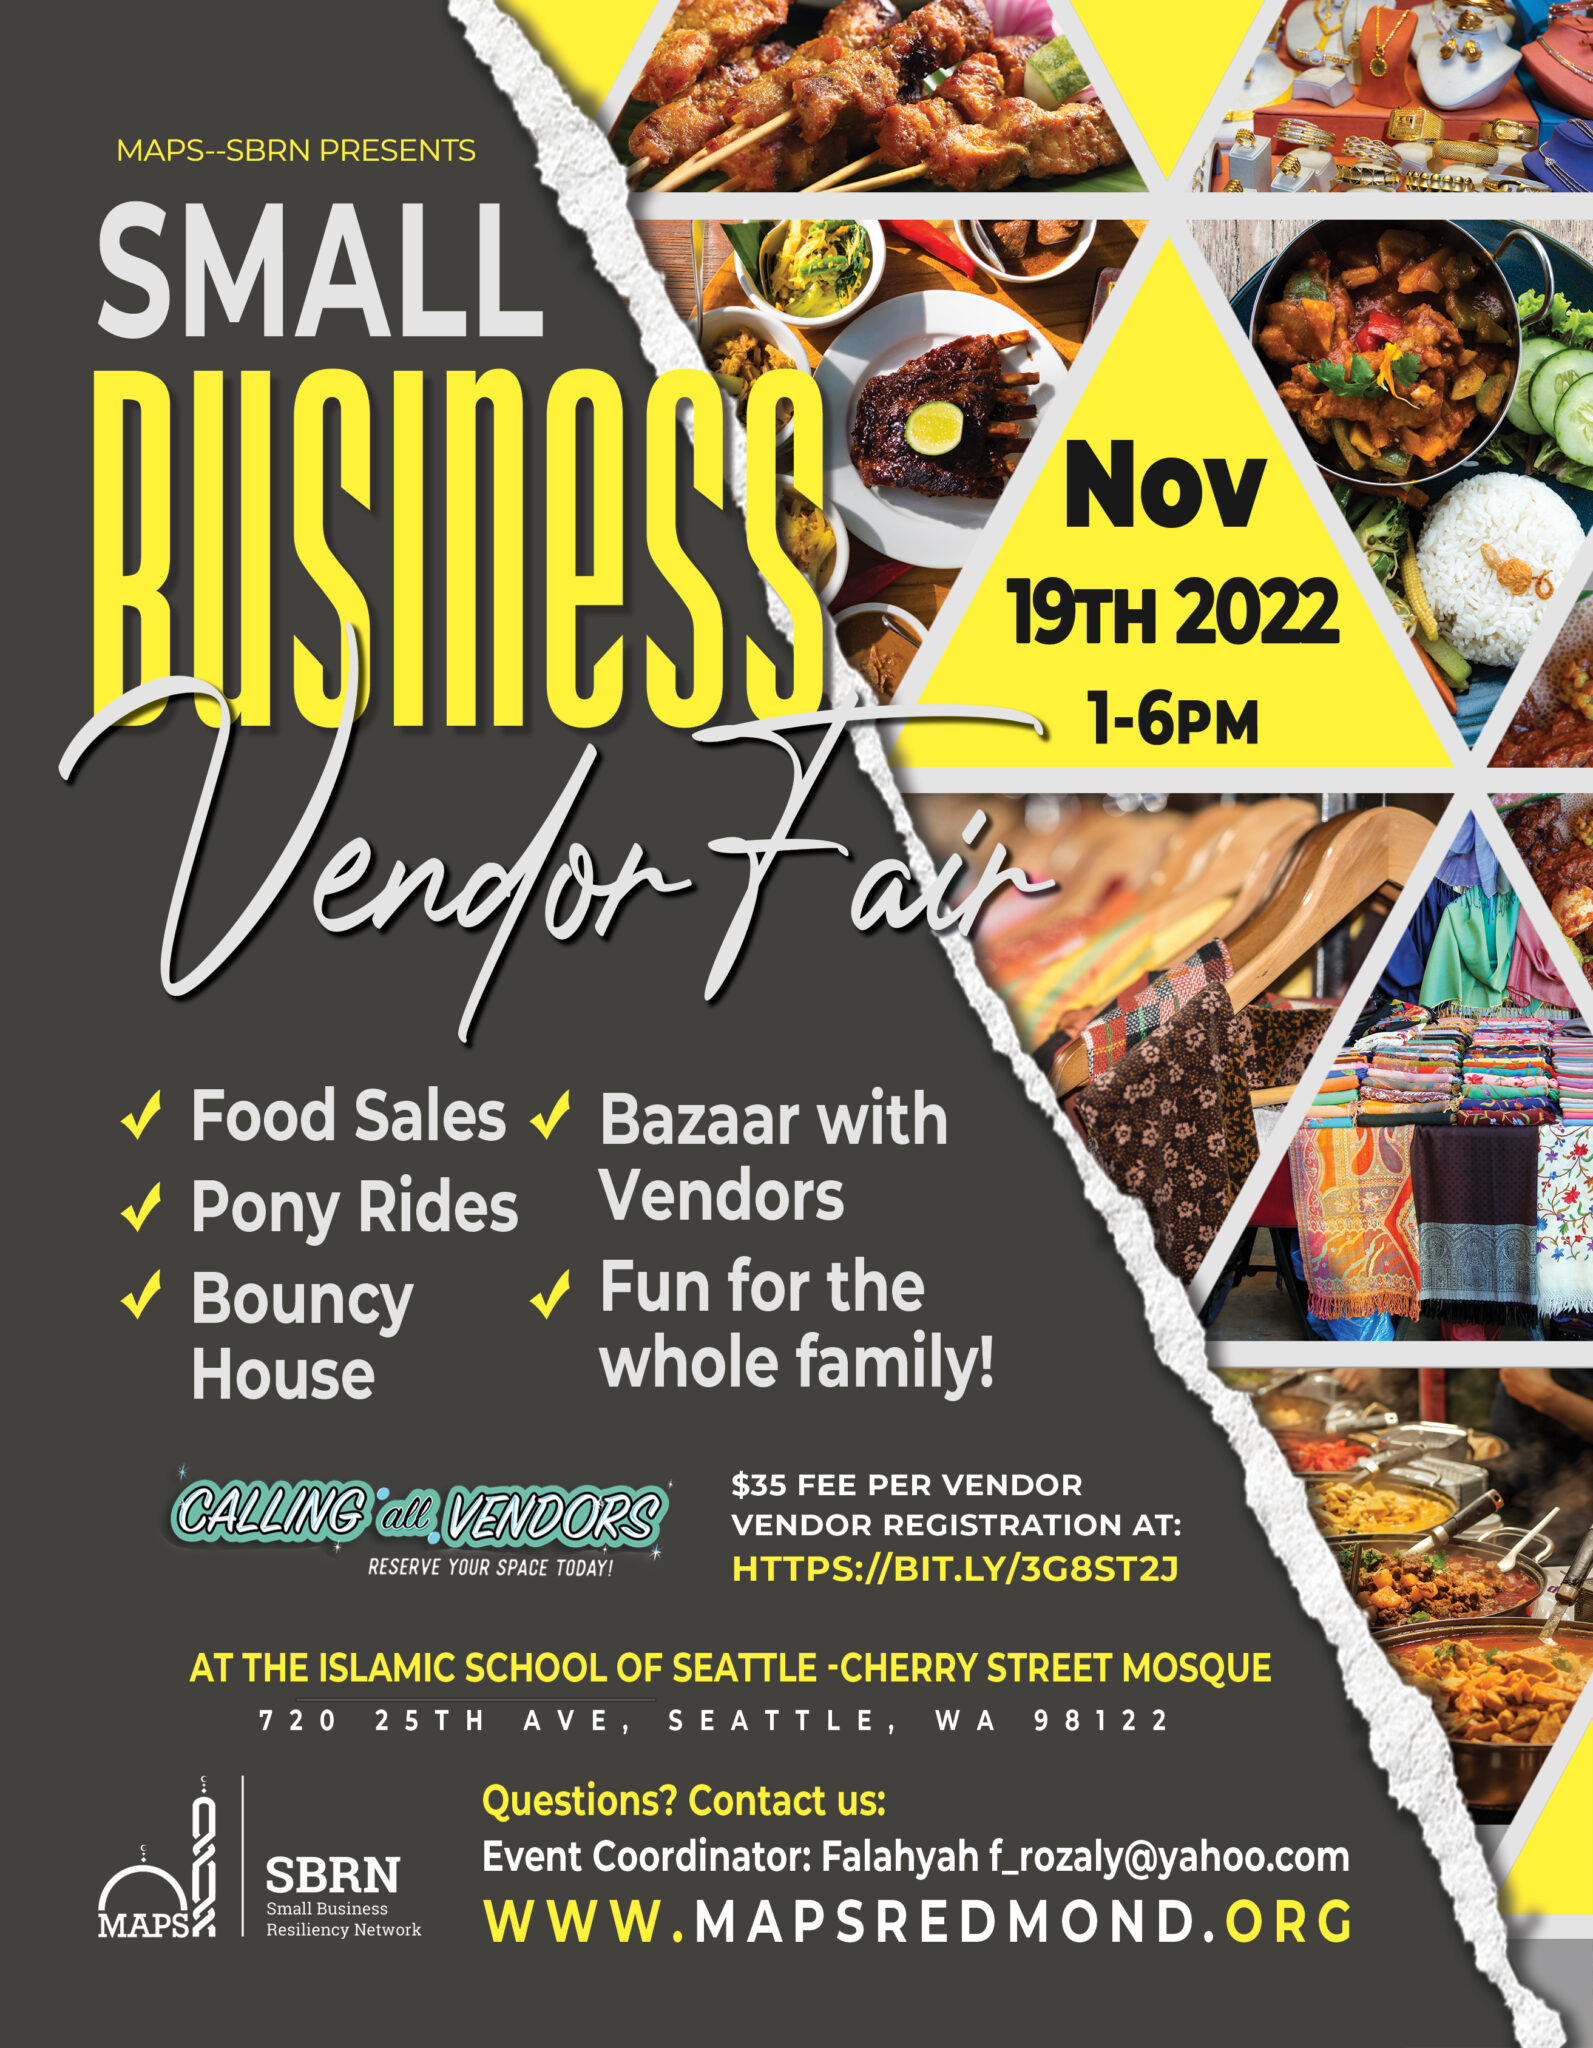 Small Business Vendor Fair Registration